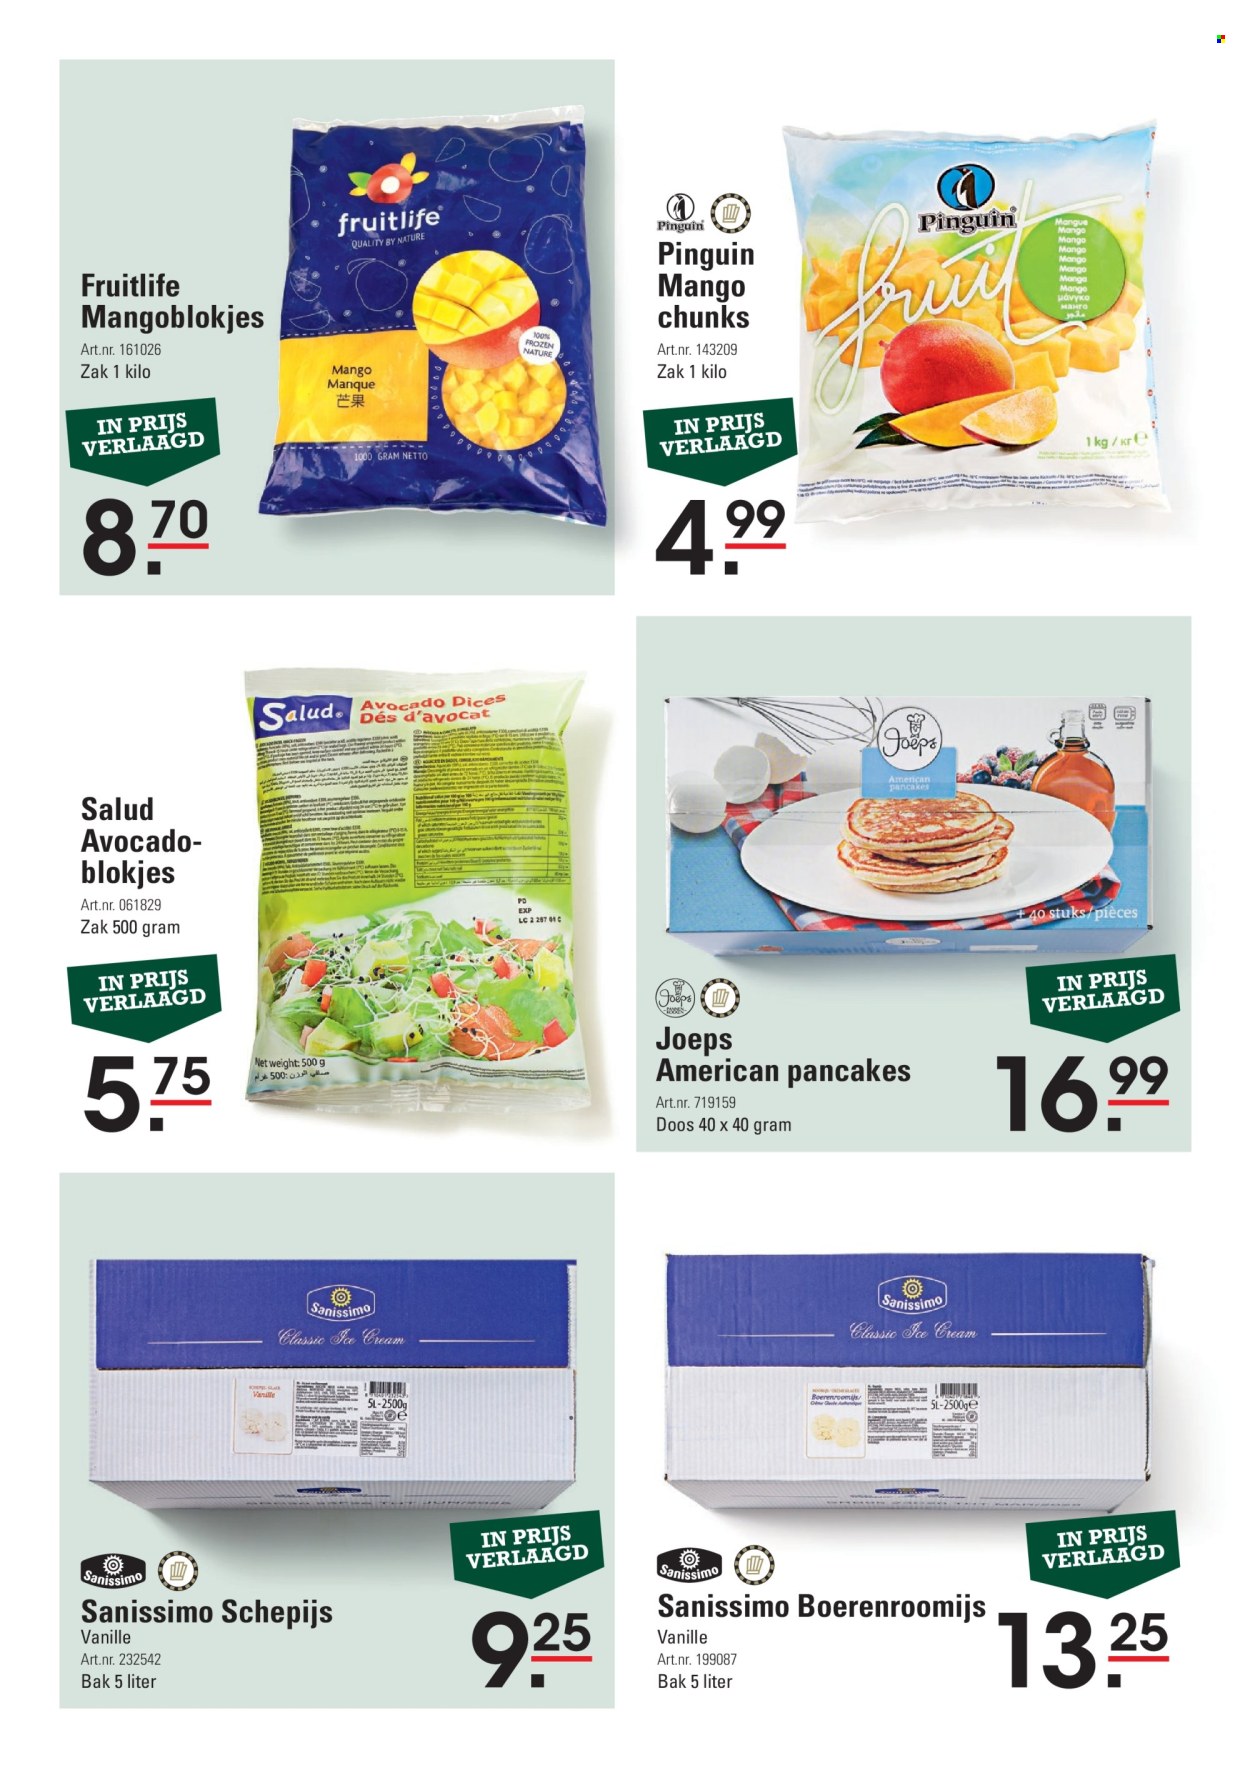 Sligro-aanbieding -  producten in de aanbieding - pannenkoeken, avocado, mango, Frozen, schepijs, boerenroomijs. Pagina 7.